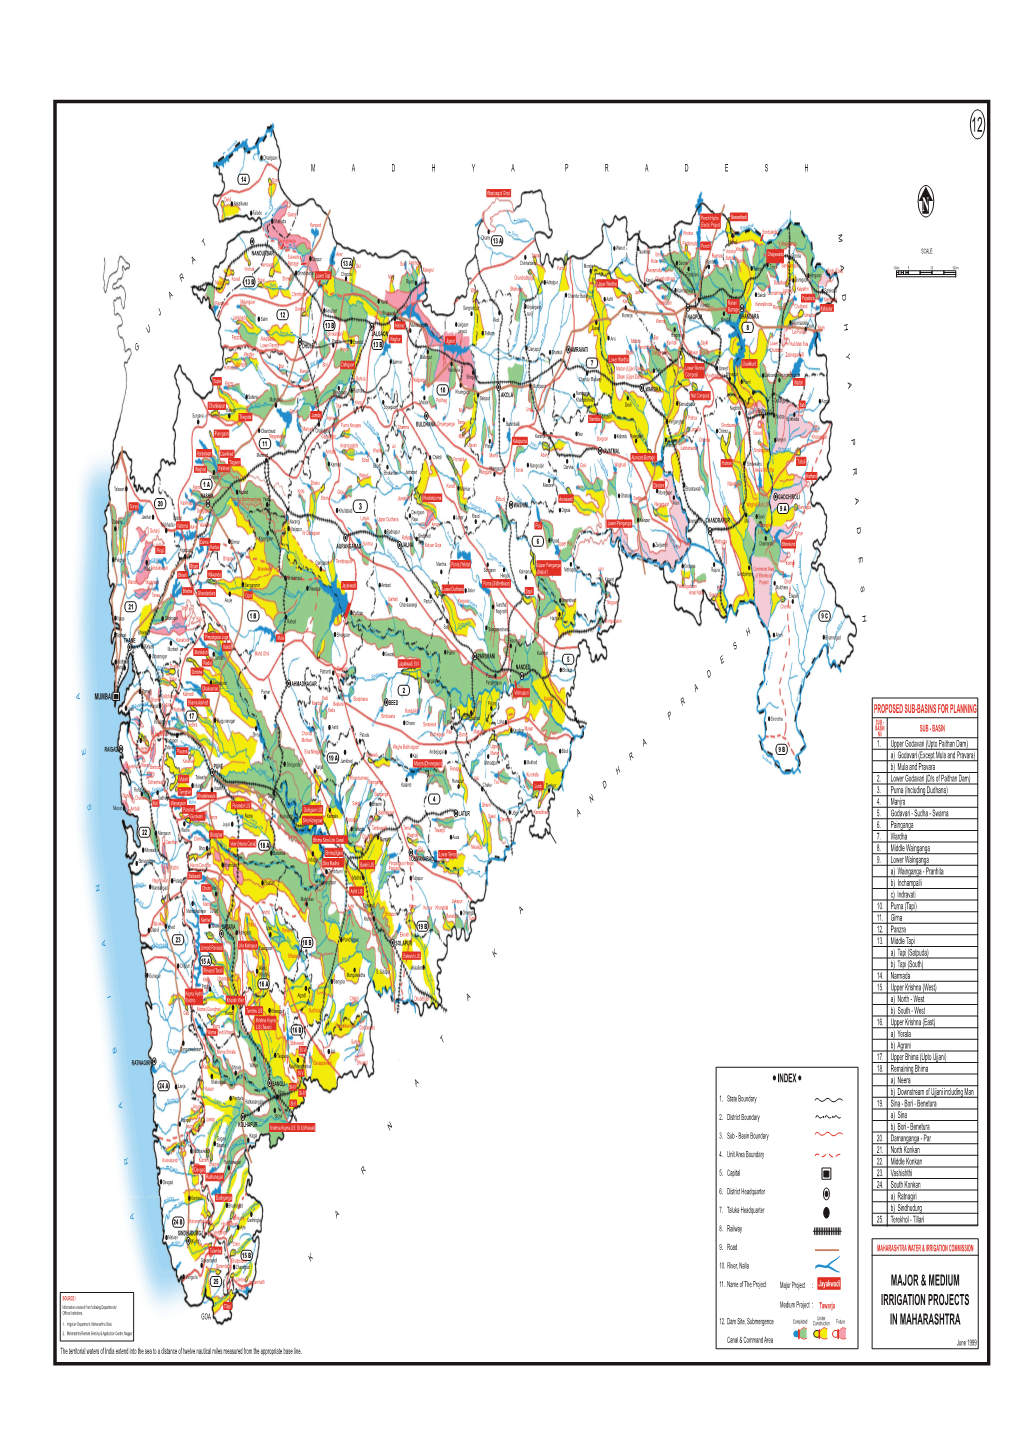 Major & Medium Irrigation Projects in Maharashtra